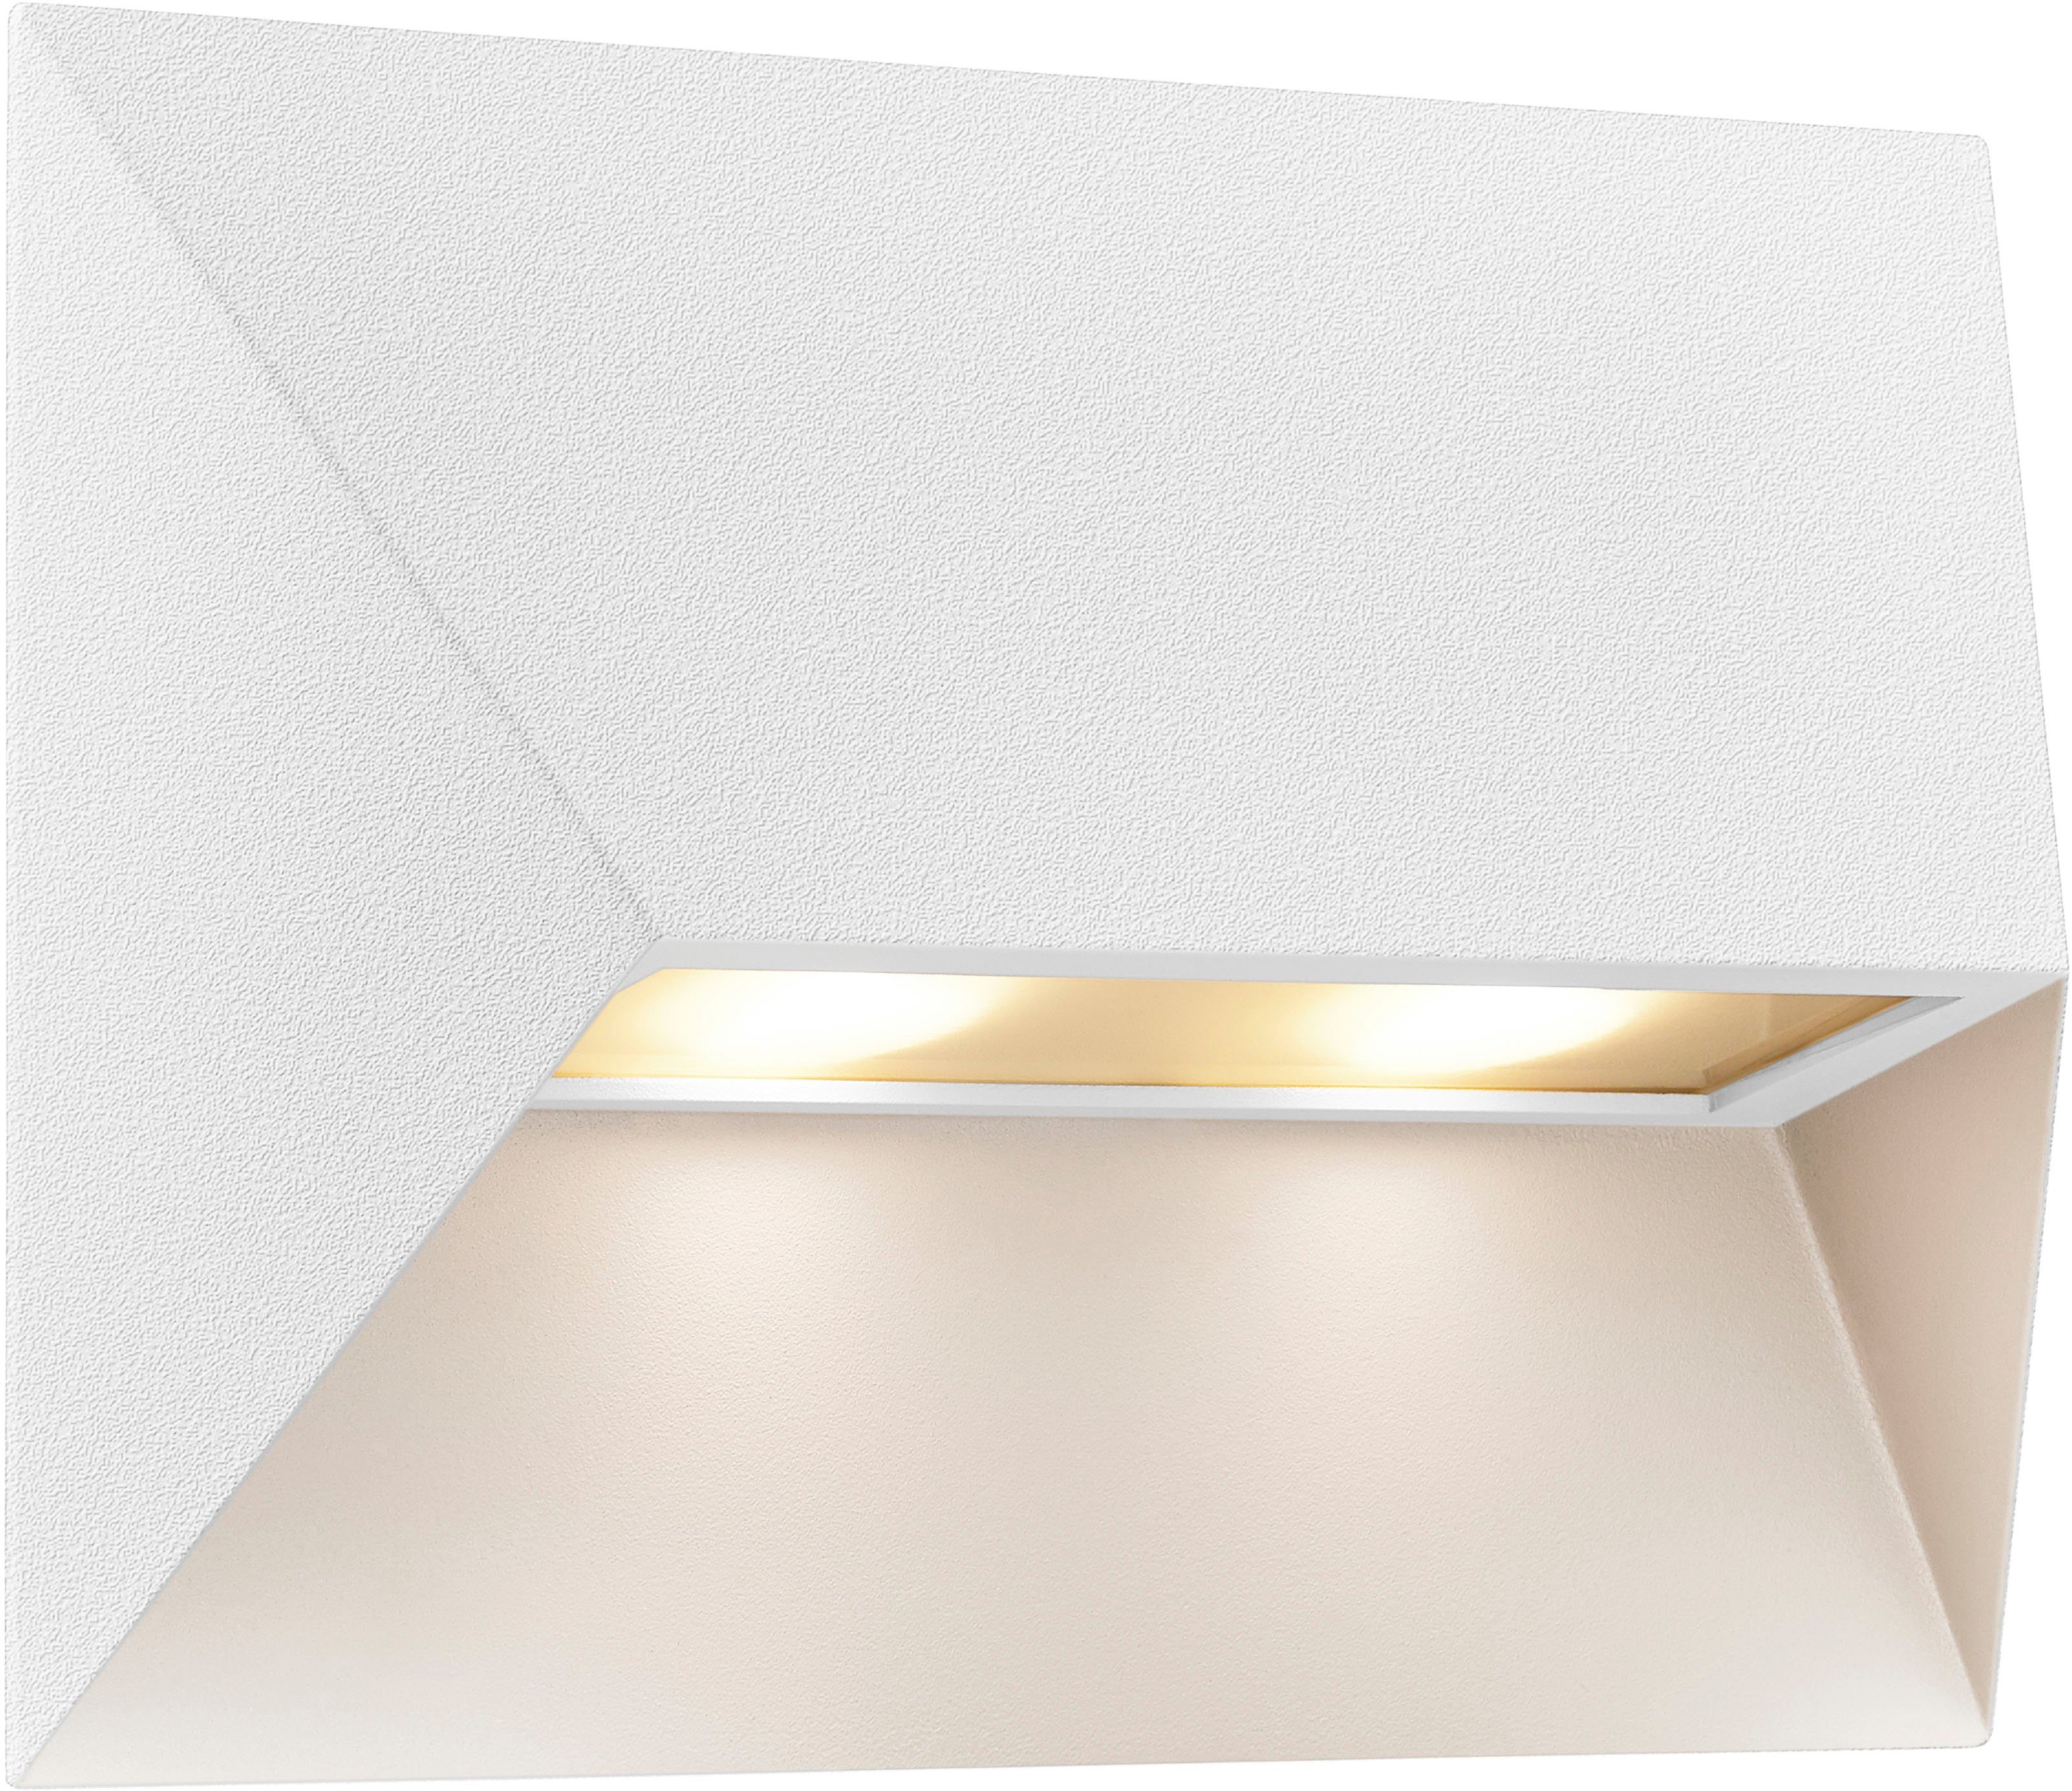 Pontio, Glühbirne möglich, Nordlux Parallelschaltung Leuchtmittel, Architekturdesign, ohne Außen-Wandleuchte austauschbare